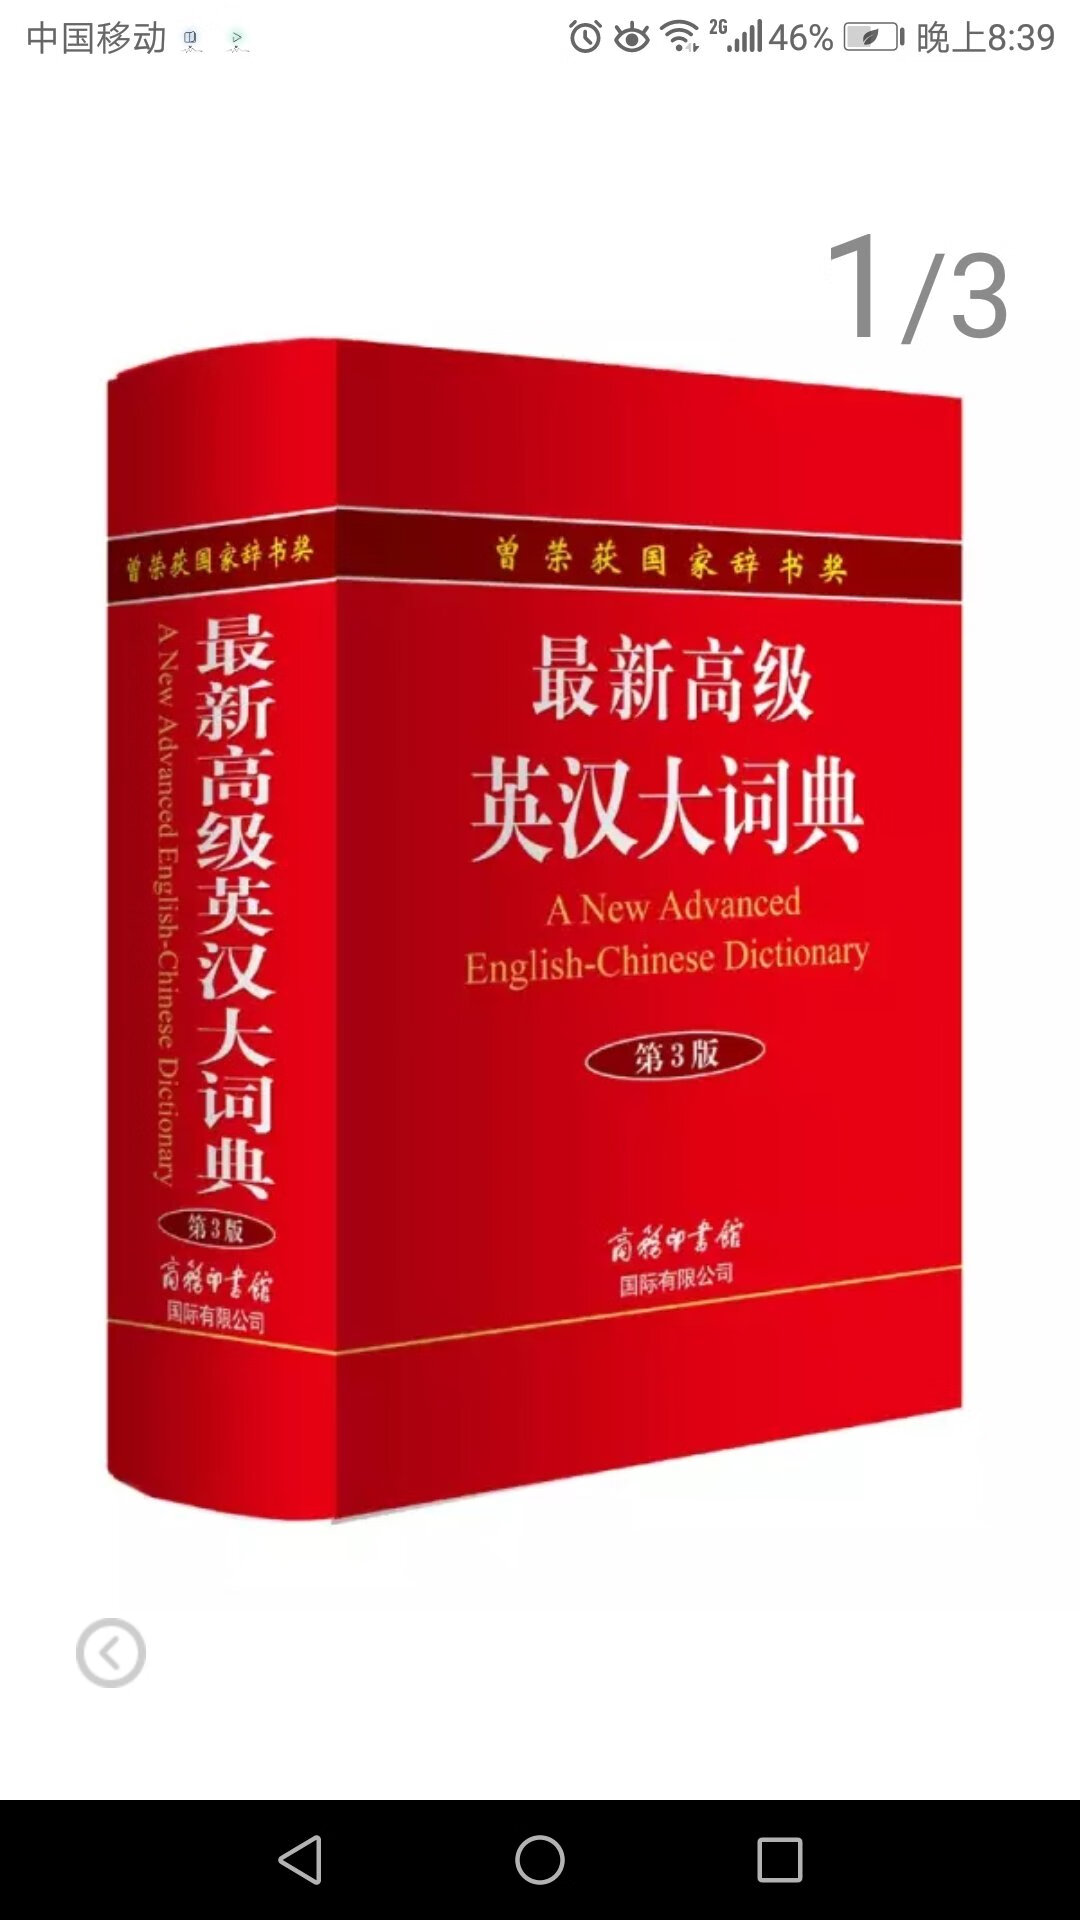 很好用的英汉词典，